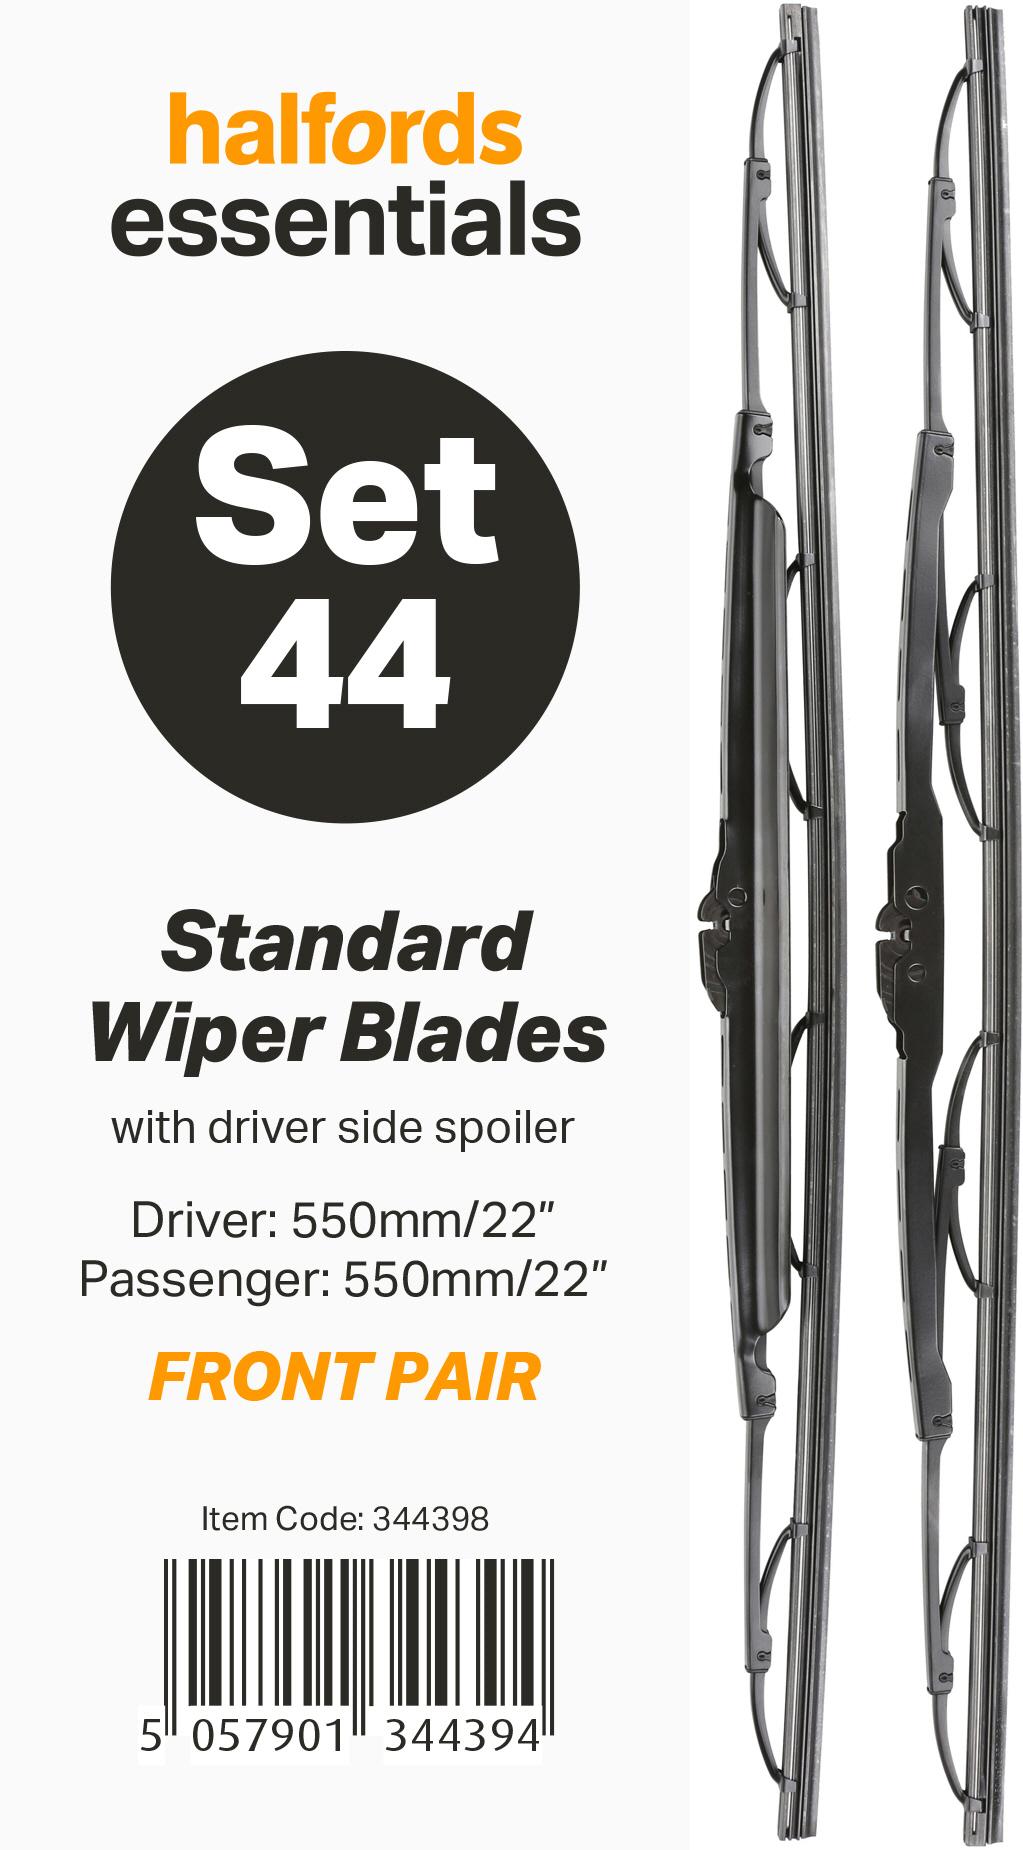 Halfords Essentials Wiper Blade Set 44